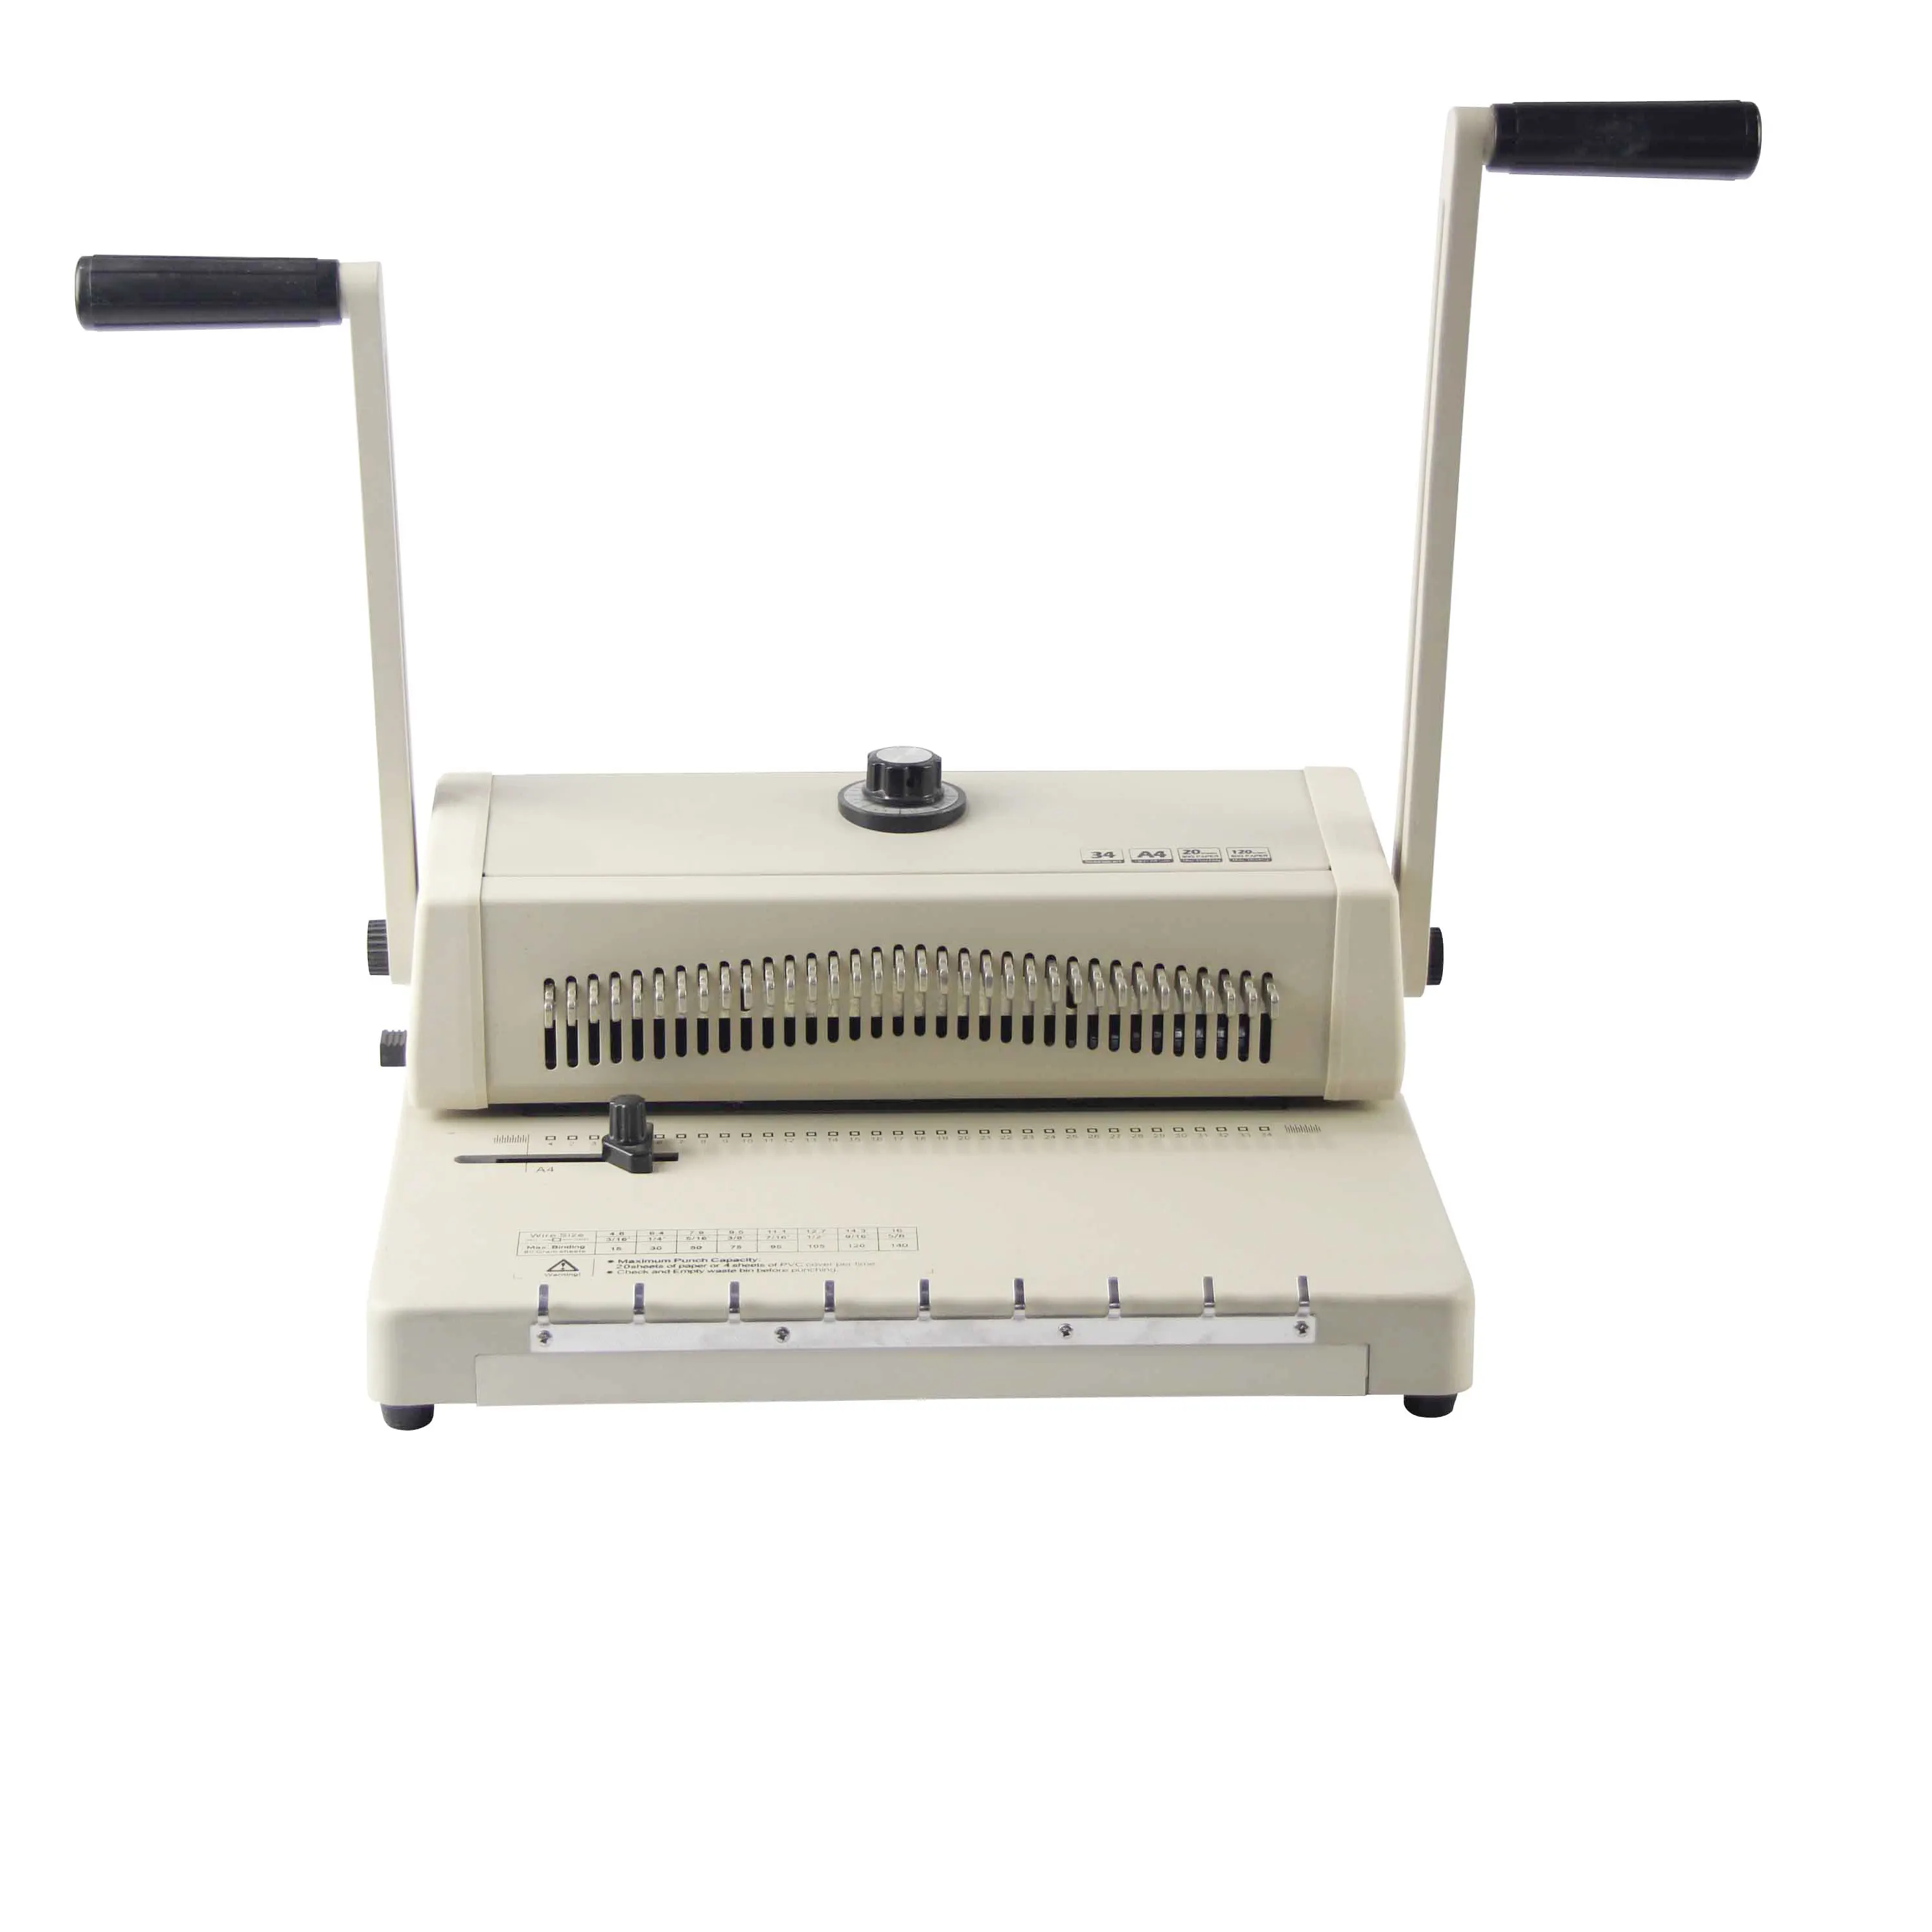 SONTO W200A دليل سطح المكتب perdect الصلب غطاء رزنامة/دفتر الطباعة ماكينة تجليد مع انخفاض السعر